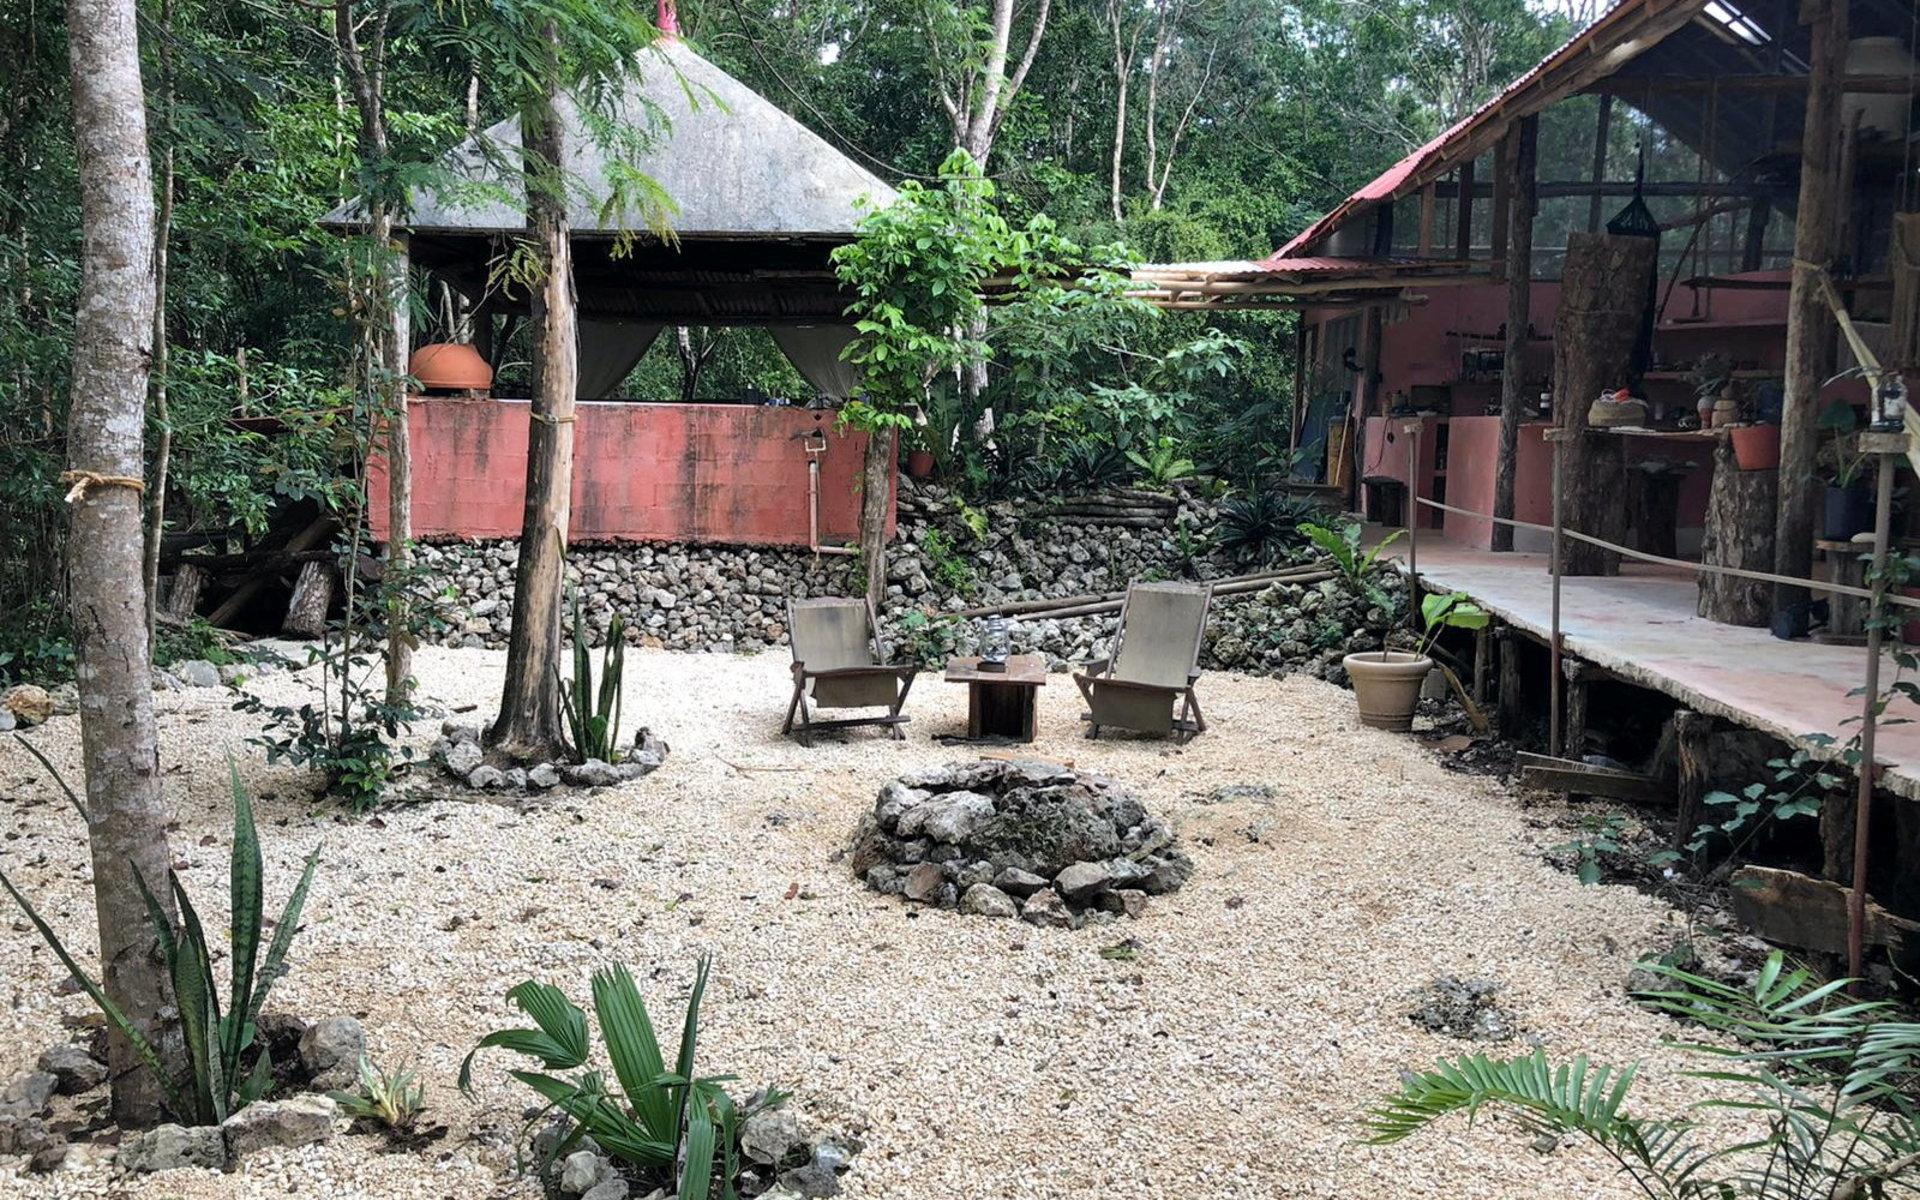 Xango ligger mitt i djungeln, men det tar ändå inte mer än fem minuter med bil till staden Tulum, och tio minuter till stranden. ”Därför är läget perfekt för turister som är ute efter en unik naturupplevelse, men också vill bada och sola.”